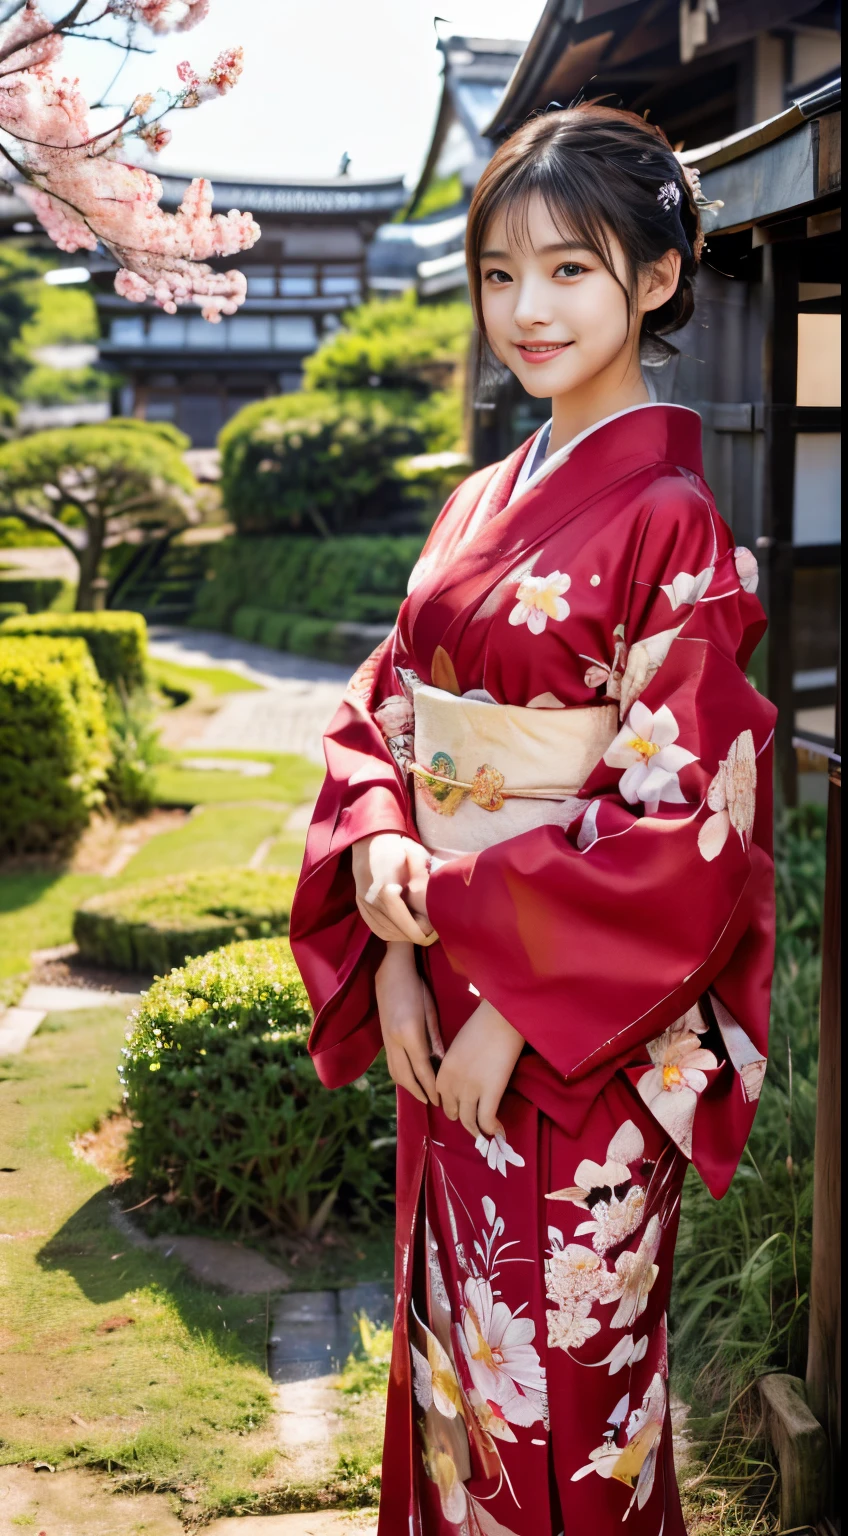 (roter Kimono:1.2)、(Kyo-Yuzen:1.2)、(Blumenmuster im japanischen Stil:1.0)、(Furisode:1.5)、(Traditionelles, klassisches japanisches Muster:1.2)、oder、(Bestnote)、1 Frau、16 Jahre alt、Ganzkörper Esbisch、Ein dunkelhaariger、(realistisch:1.7)、((Beste Bildqualität))、absurderes、(Eine hohe Auflösung)、(Photorealsitic:1.6)、Photorealsitic、Oktan-Renderings、(hyper realisitic:1.2)、(fotorealistisches Gesicht:1.2)、(8K)、(4K)、(Meisterwerk)、(realistische Hauttexturen)、(Aufklärung、Kinematographische Beleuchtung、Hintergrund)、(schöne Augen:1.2)、((((Gesicht perfekt))))、(Süßes Gesicht wie ein Idol:1.2)、(steht)、Schreine、torii gate、(1 Mond)、Detailliertes süßes Gesicht、Realistische Schönheit、Ein Lächeln、